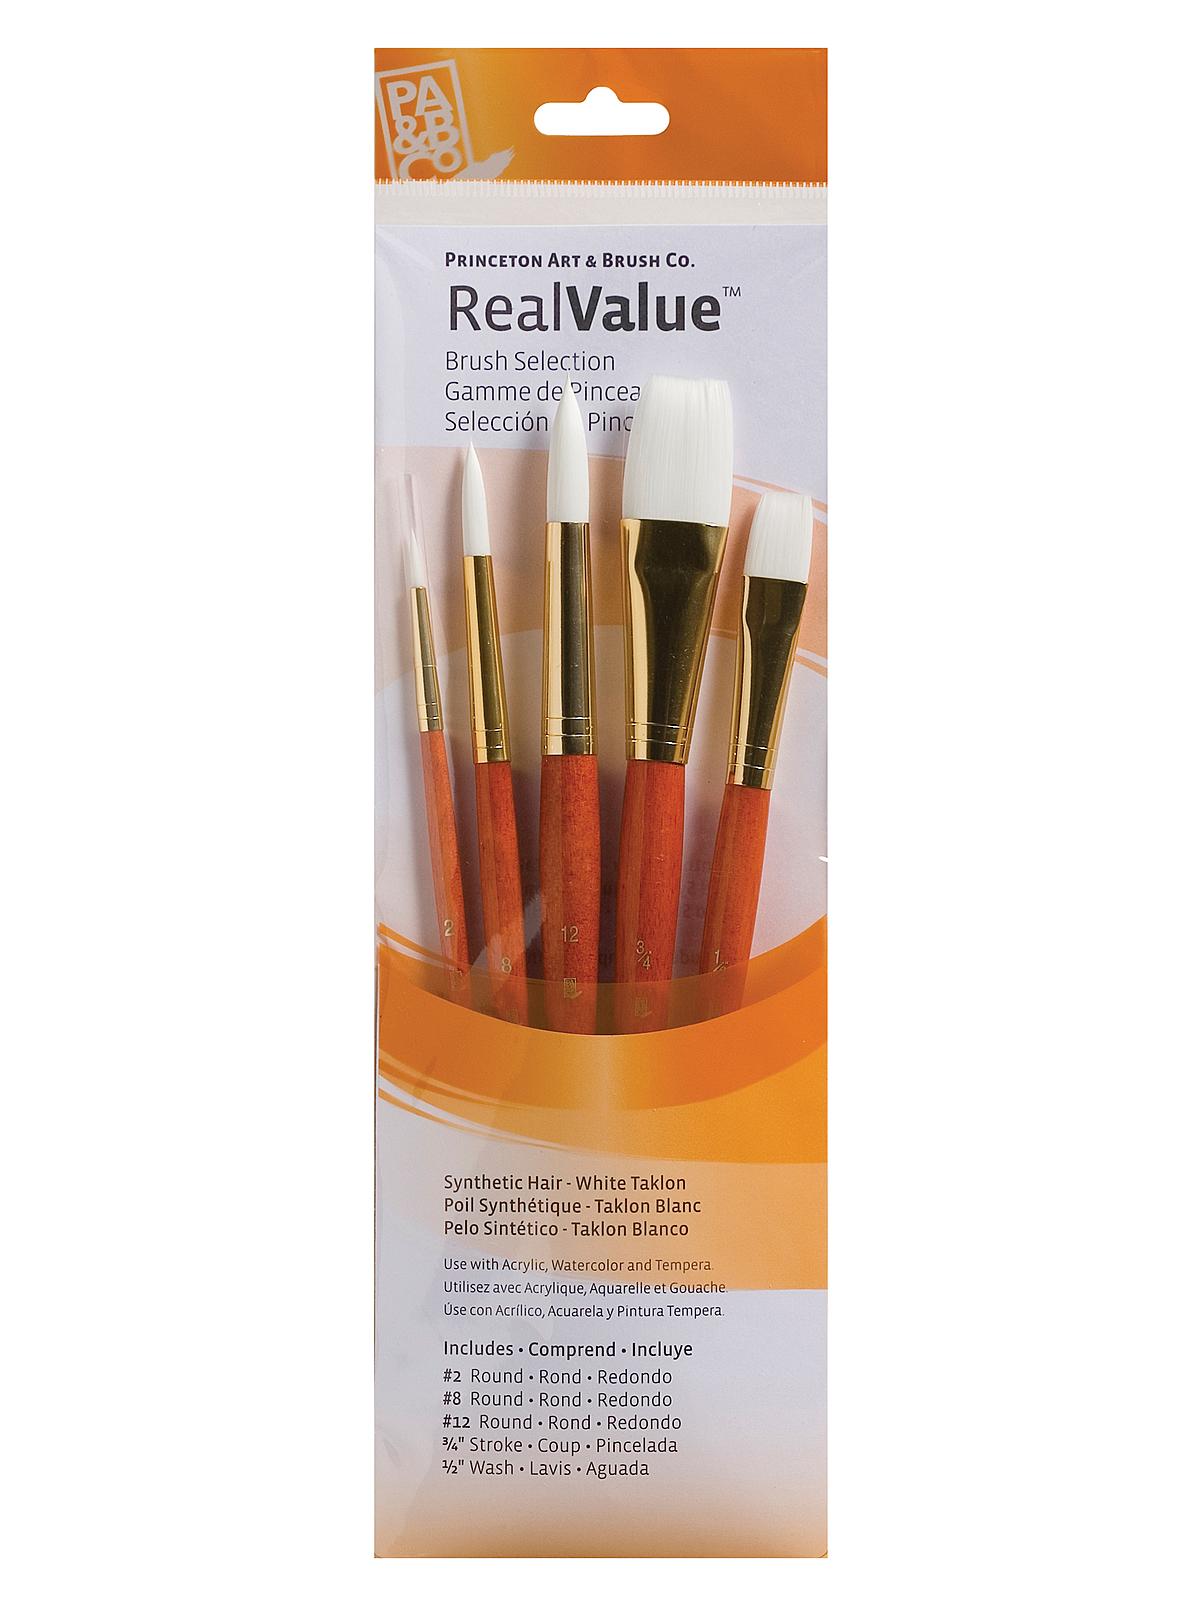 Real Value Series 9000 Orange Handled Brush Sets 9152 Set Of 5